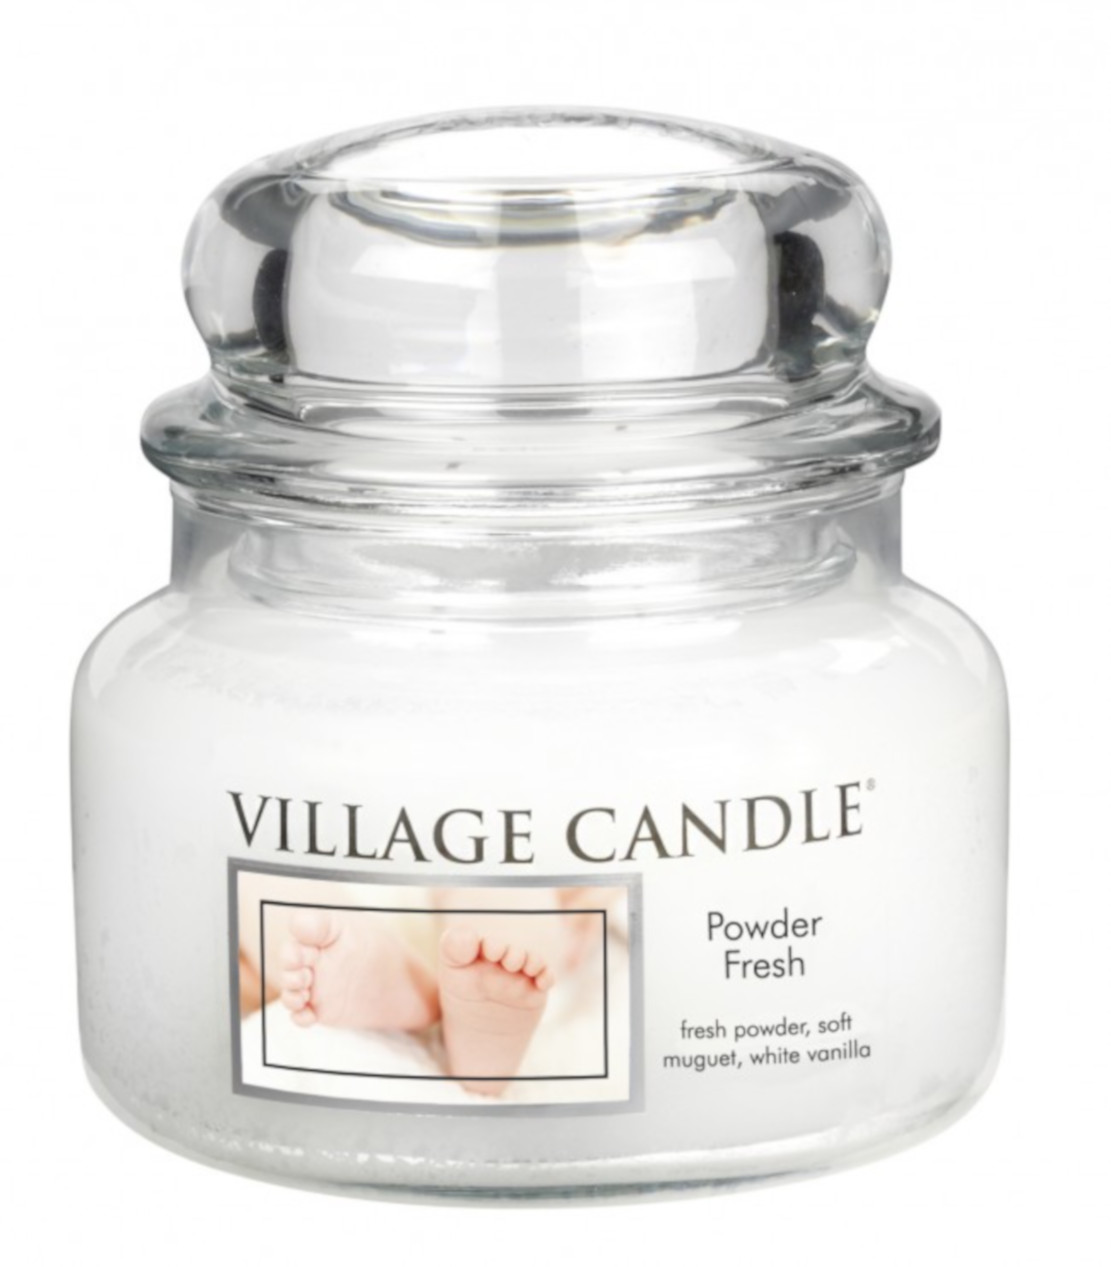 Village Candle Powder Fresh Small Jar 262g